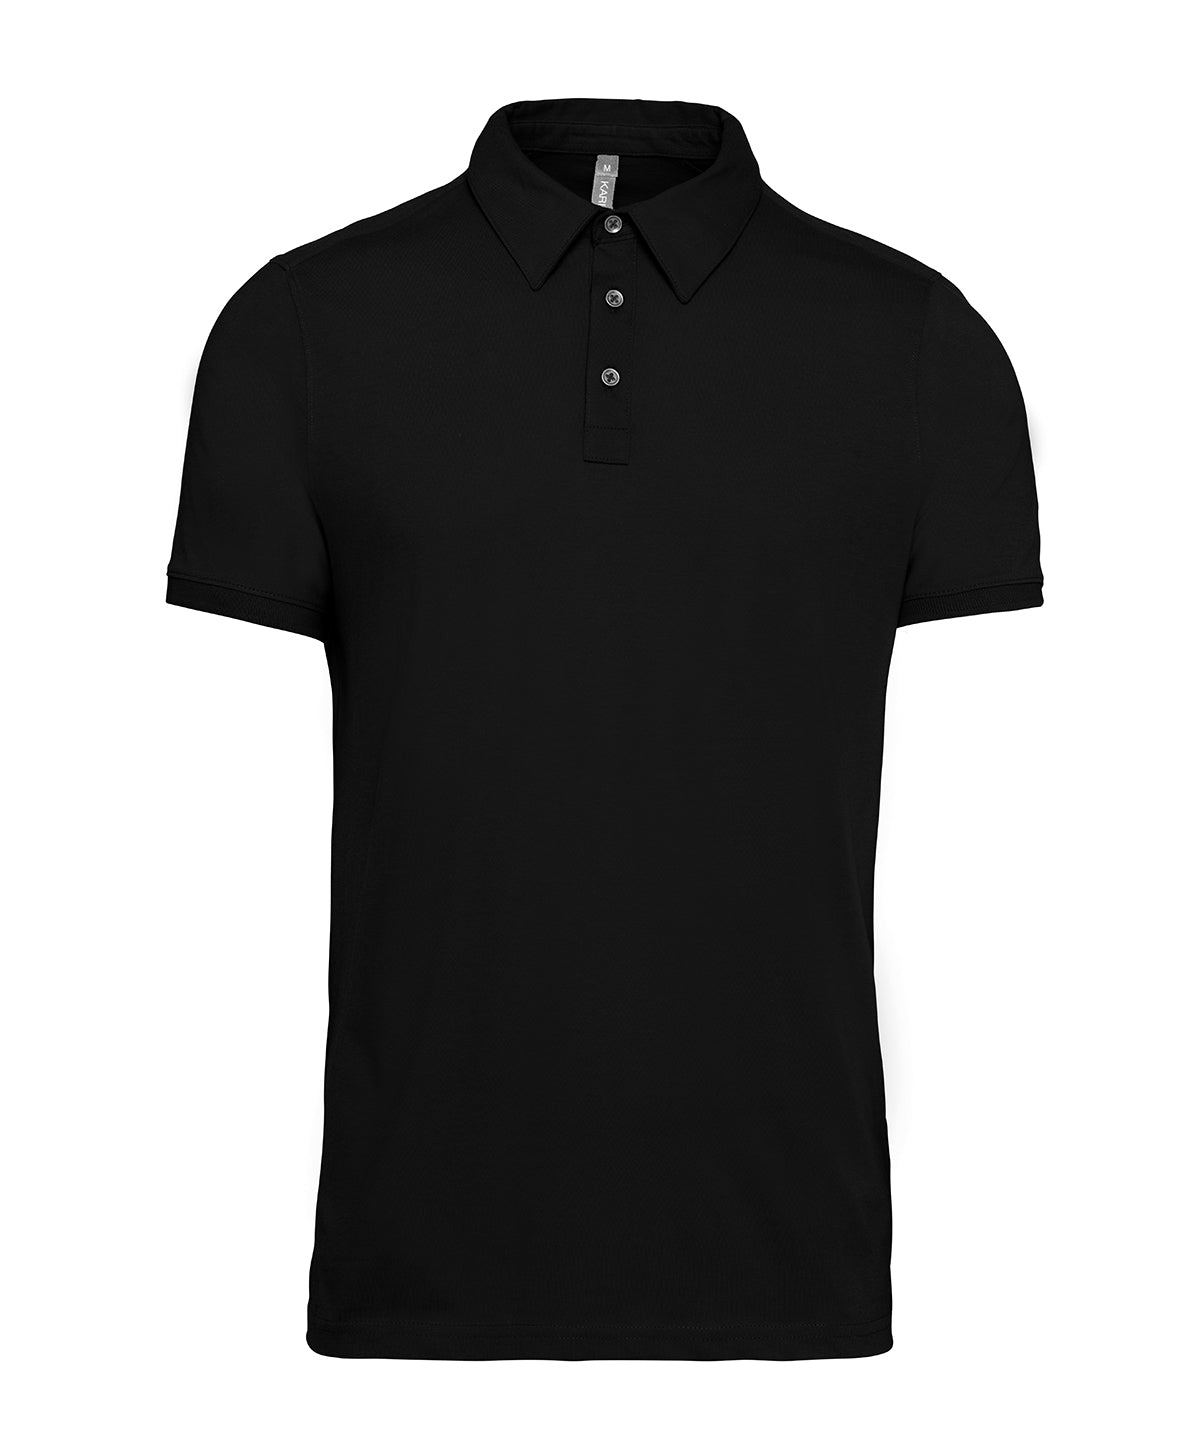 Personalised Polo Shirts - Black Kariban Jersey knit polo shirt